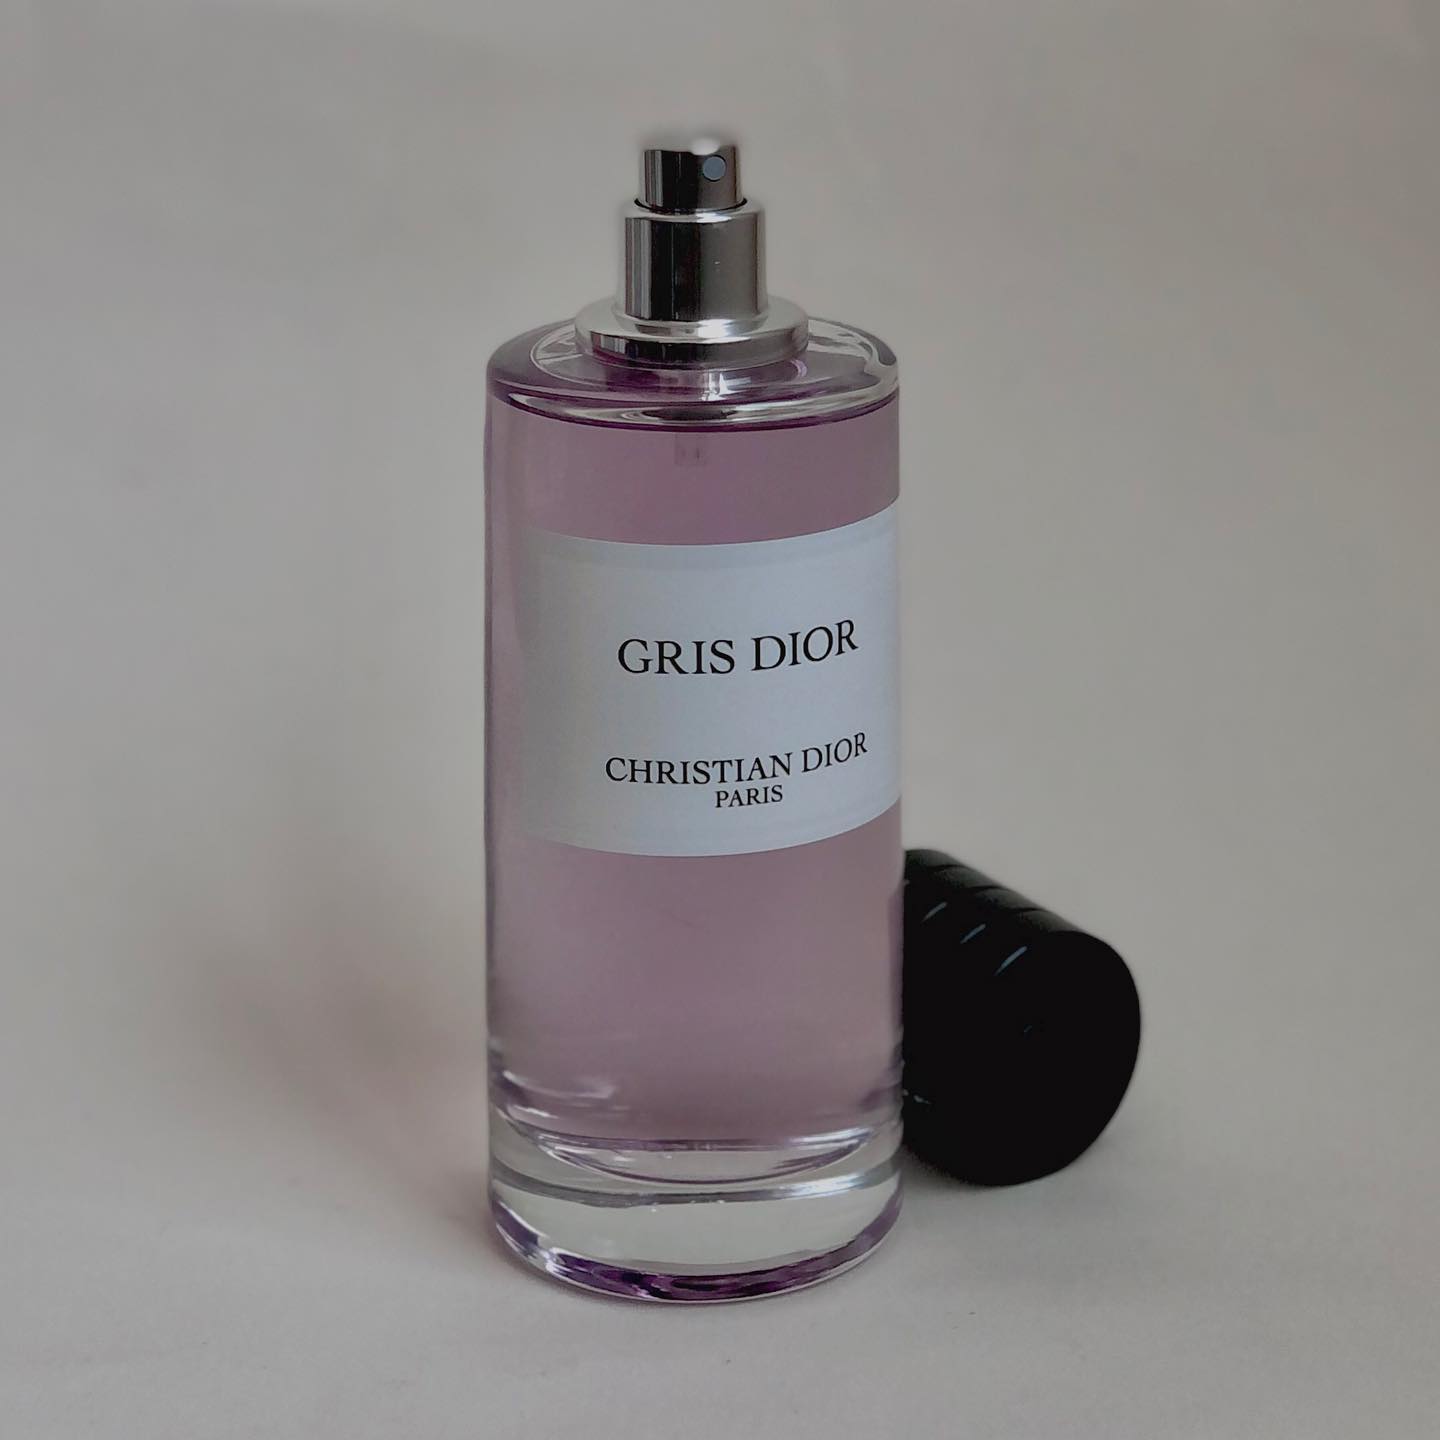 Dior νέο άρωμα Gris